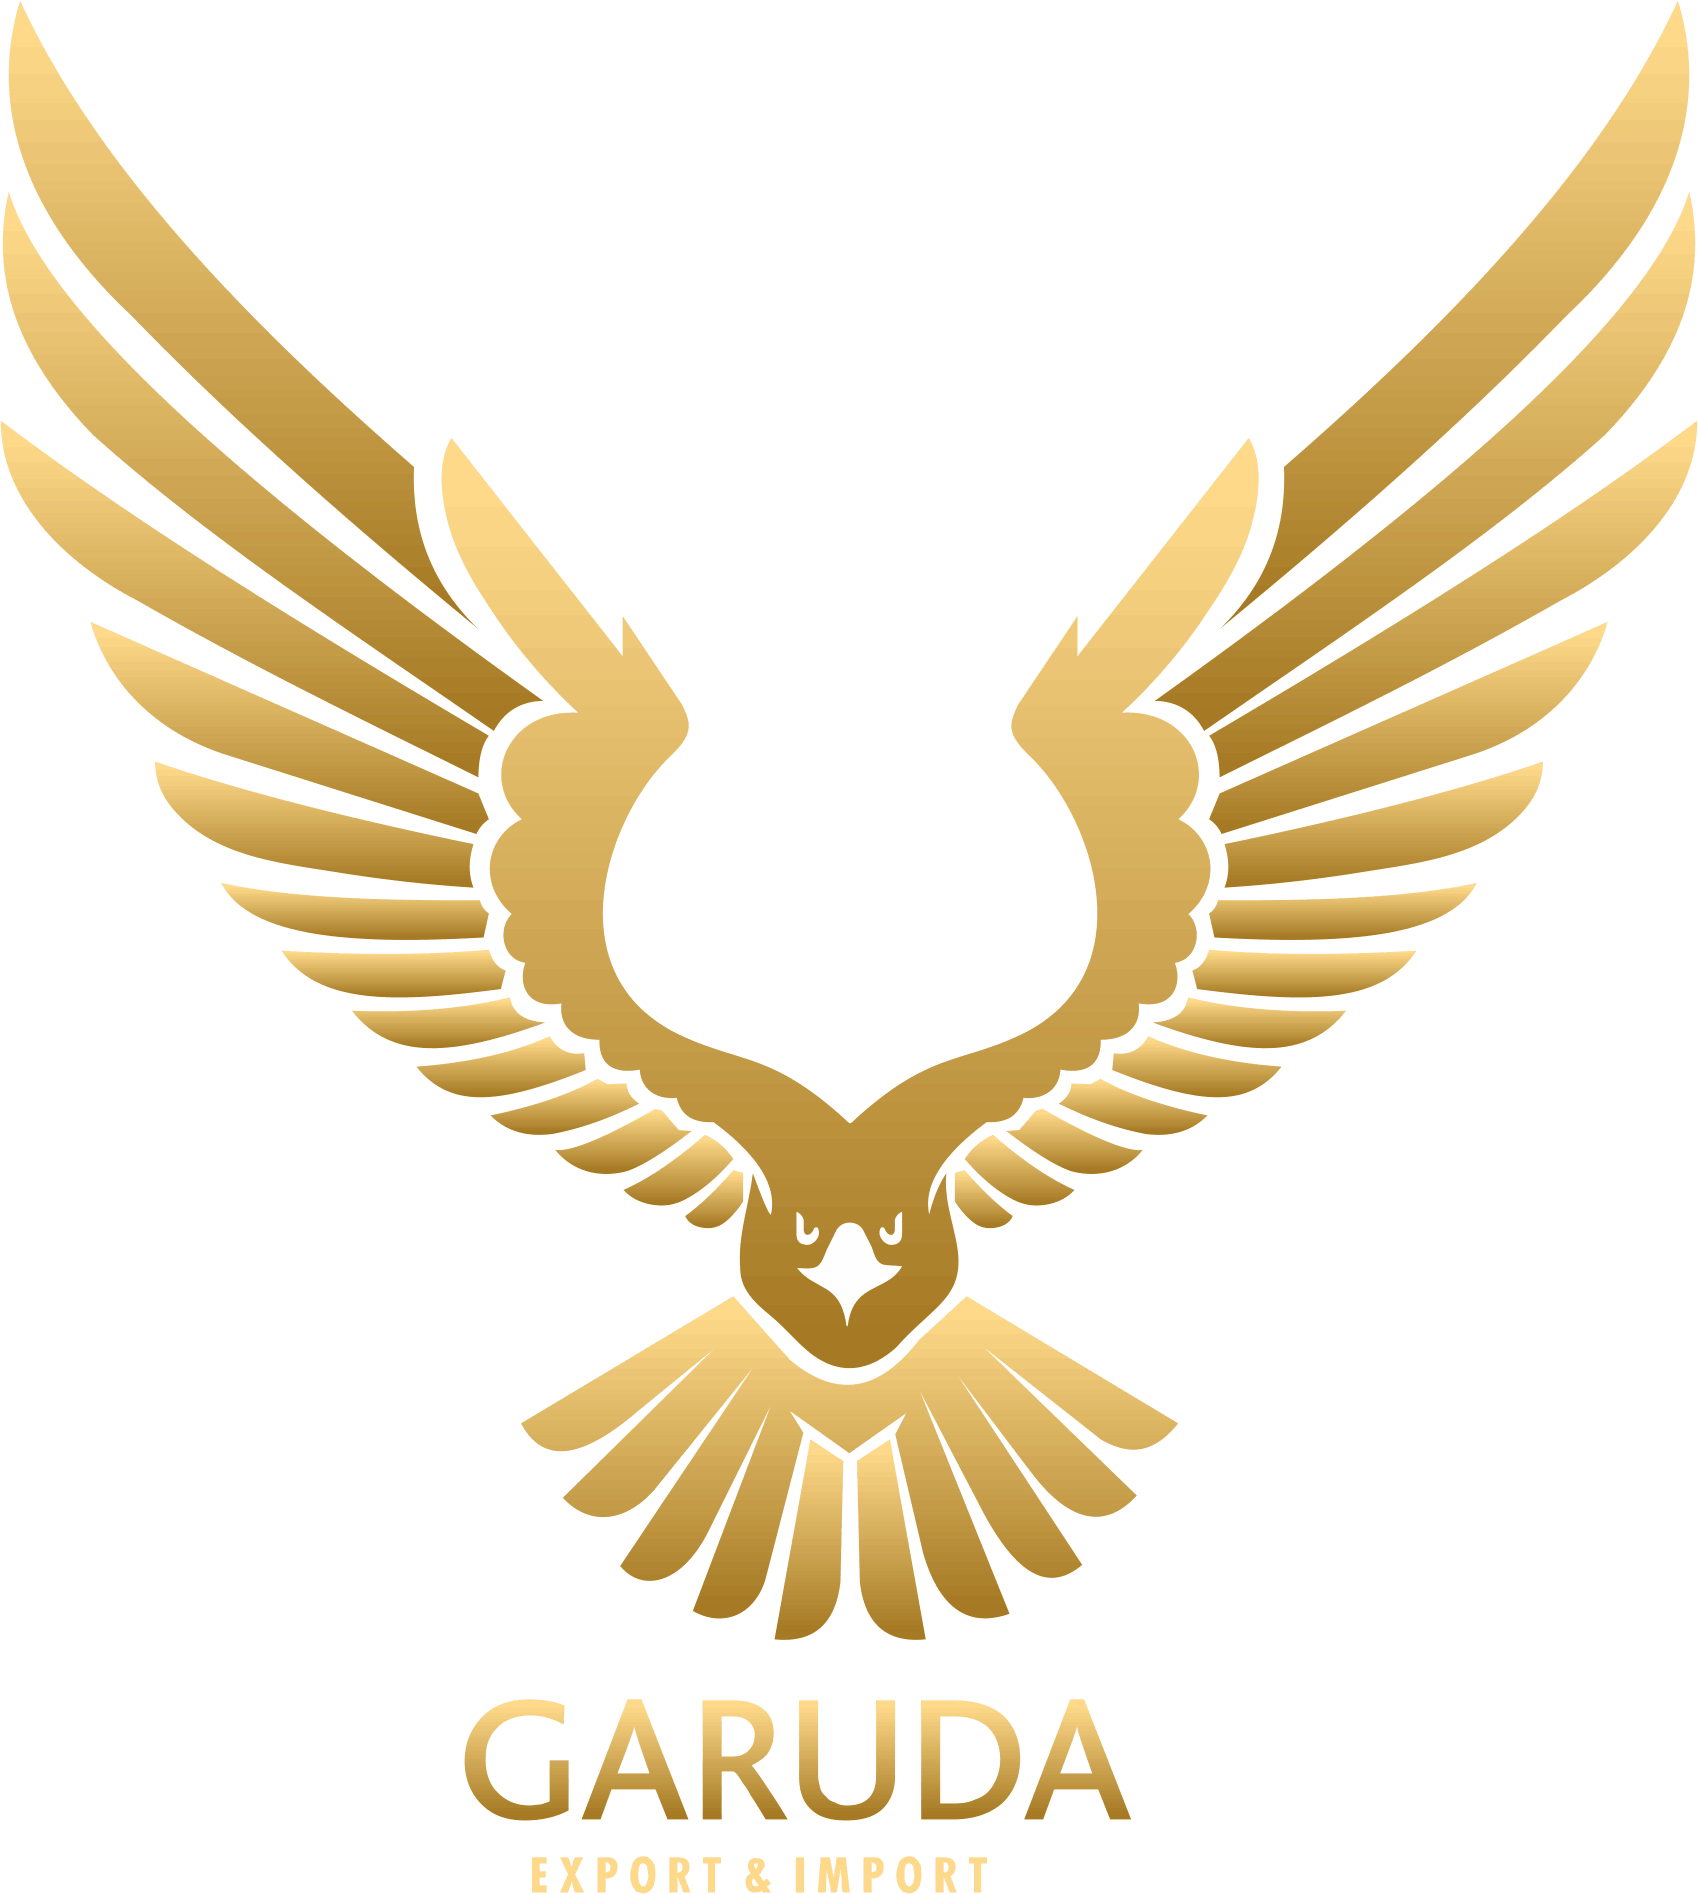 GARUDA